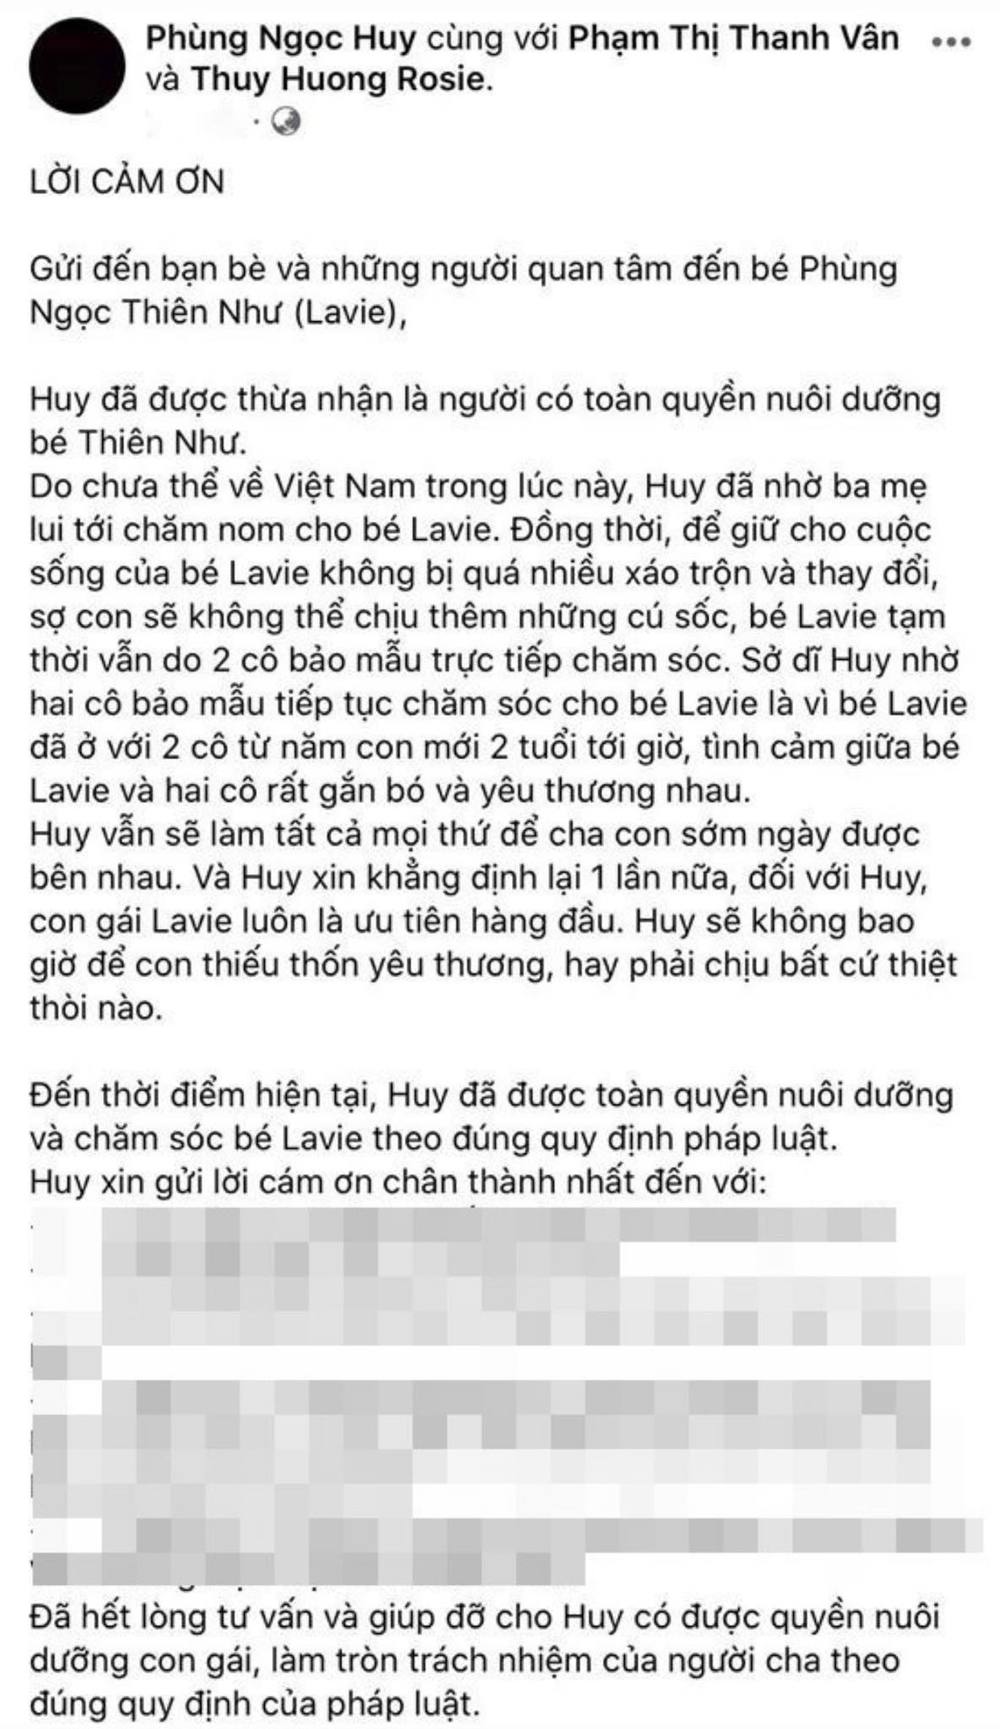  
Bài chia sẻ về việc được quyền hợp pháp nuôi bé Lavie của Phùng Ngọc Huy. (Ảnh: chụp màn hình)